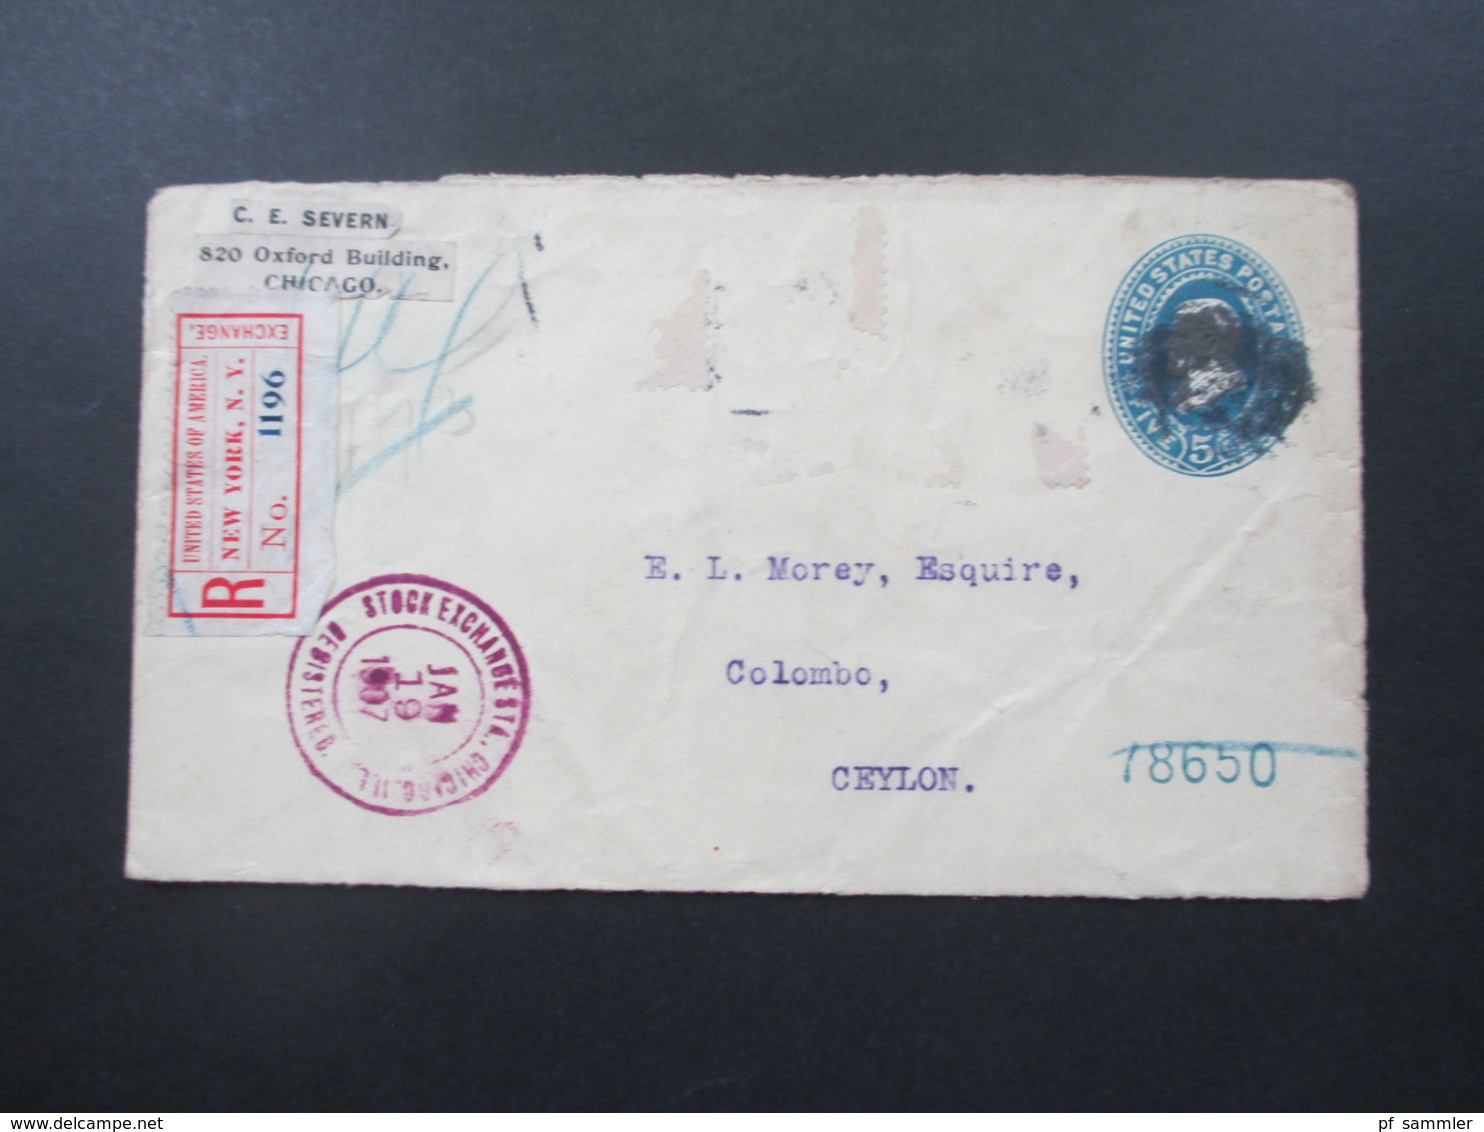 USA 1907 Registered Mail New York Exchange Und Violetter Stp. Stock Exchange Chicagi ILL. Nach Ceylon!! über London - Lettres & Documents